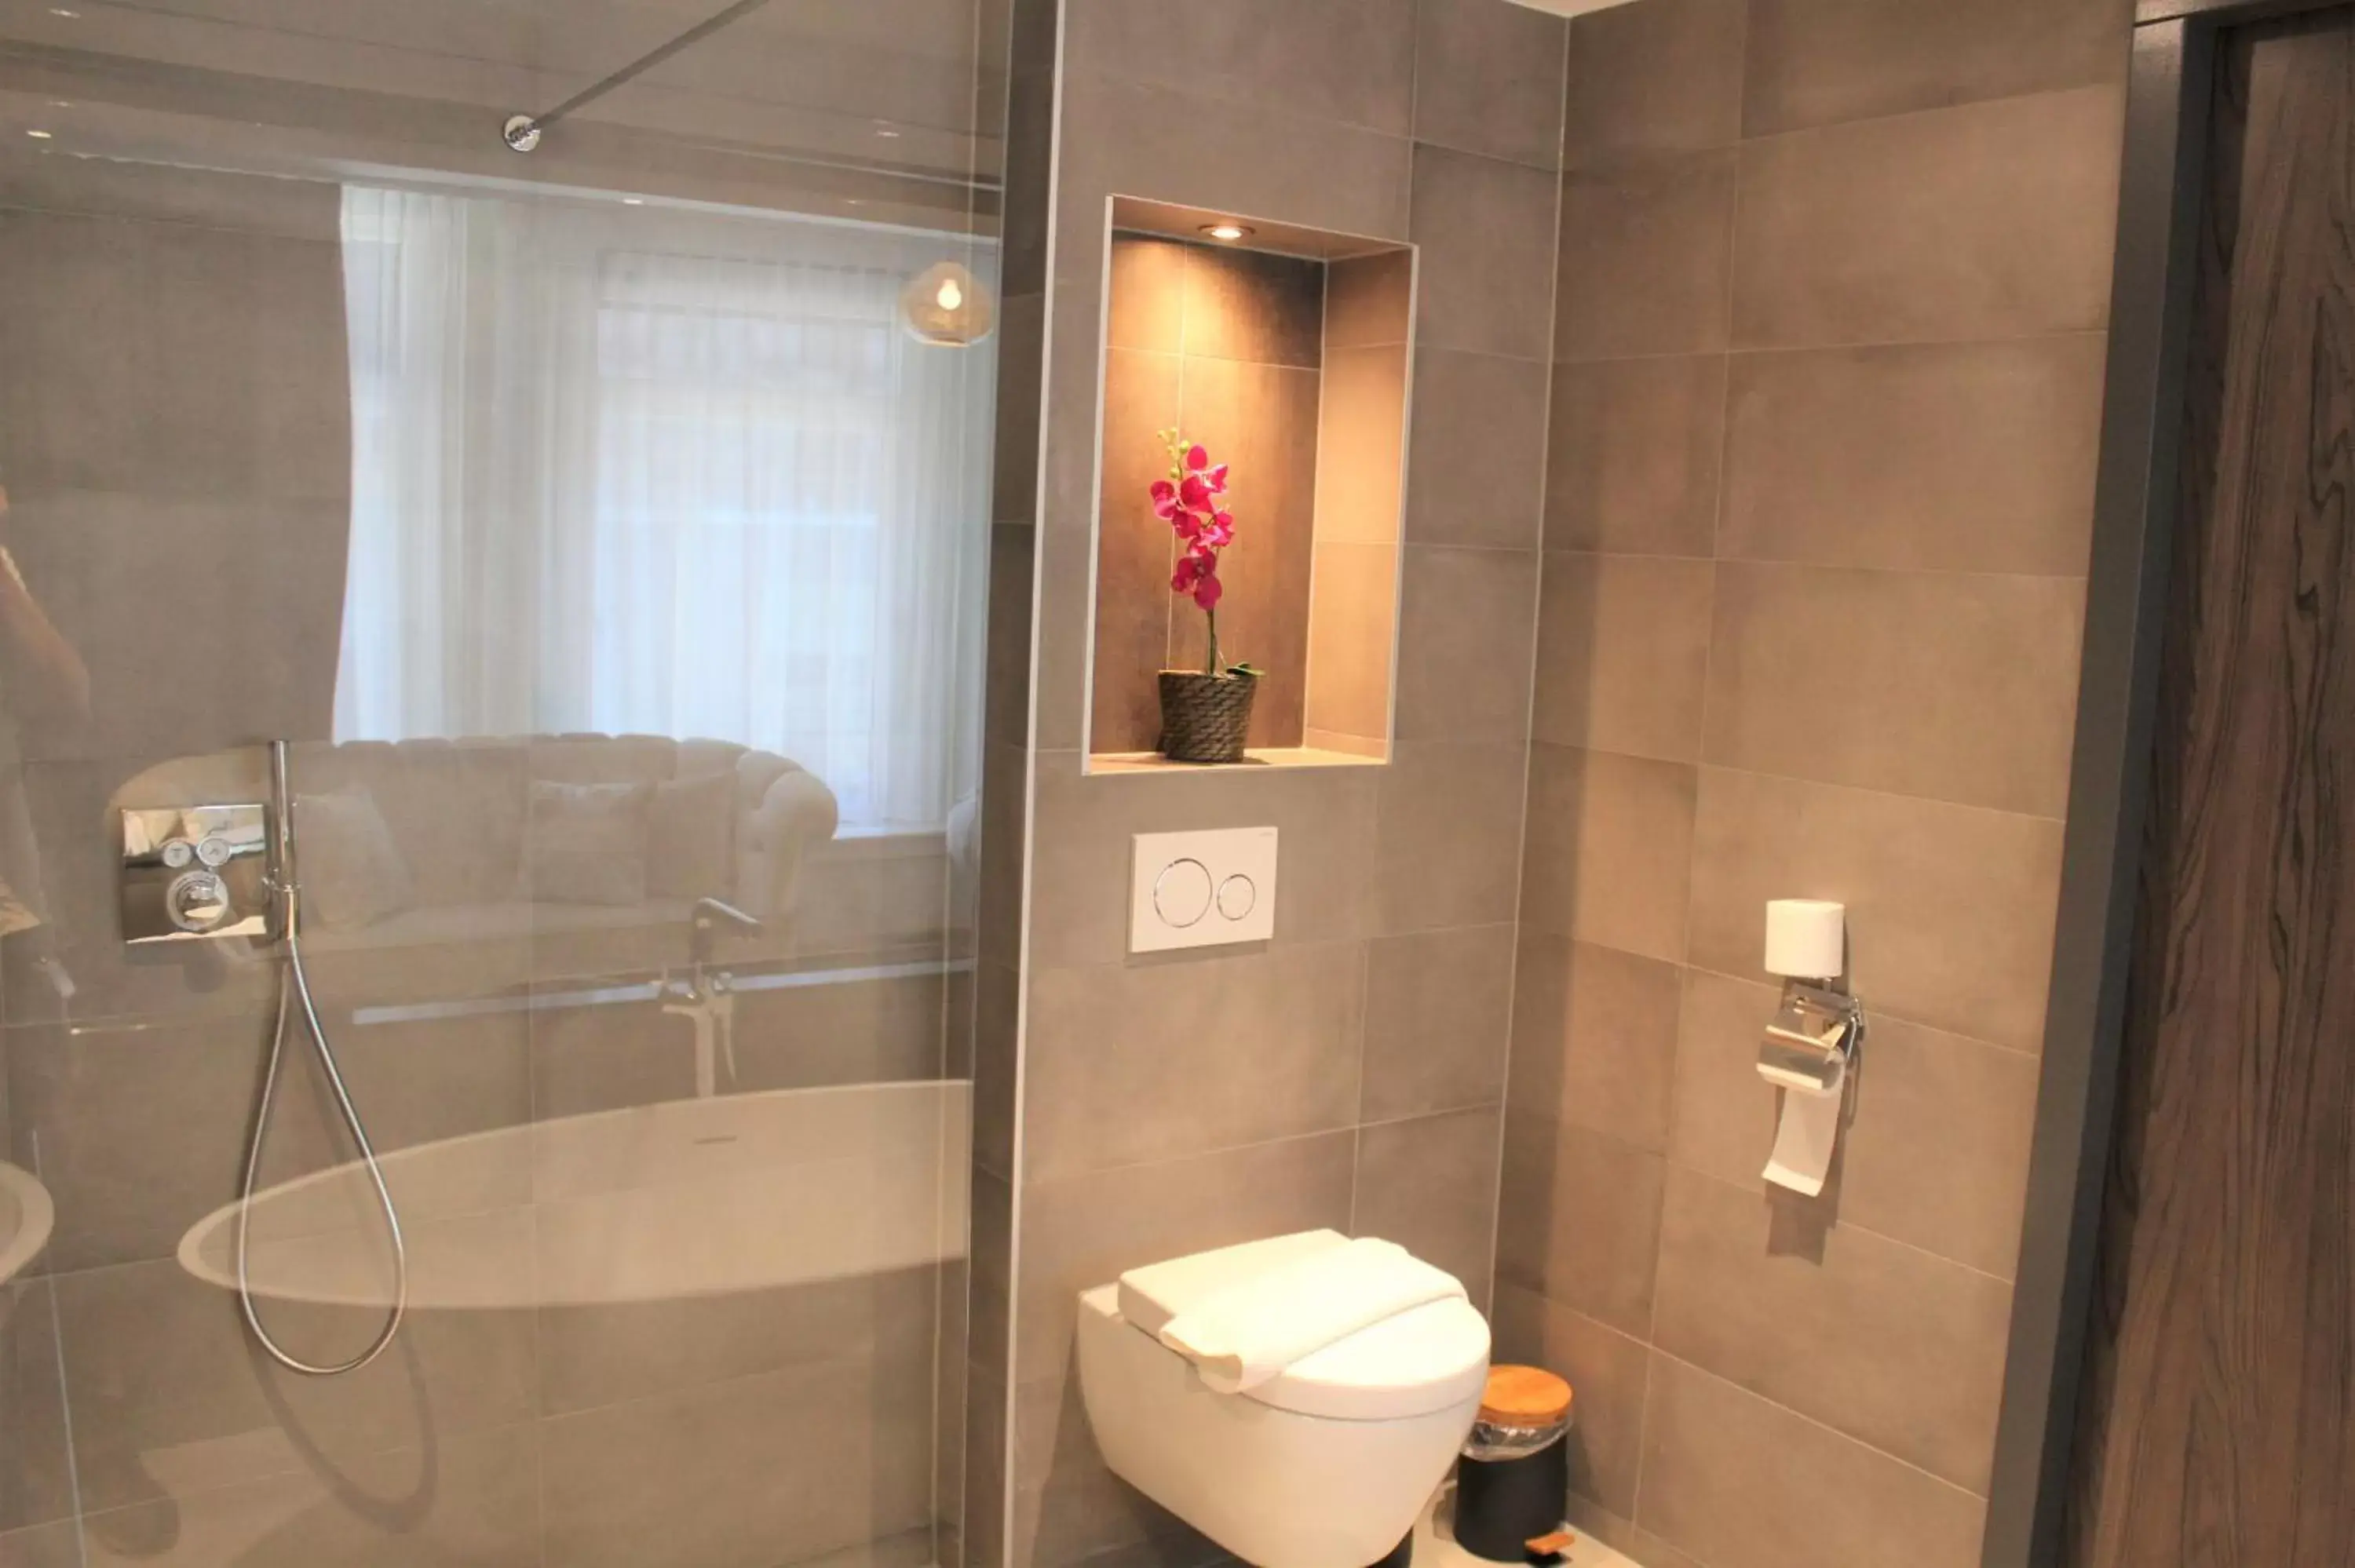 Bathroom in Dream Hotel Amsterdam